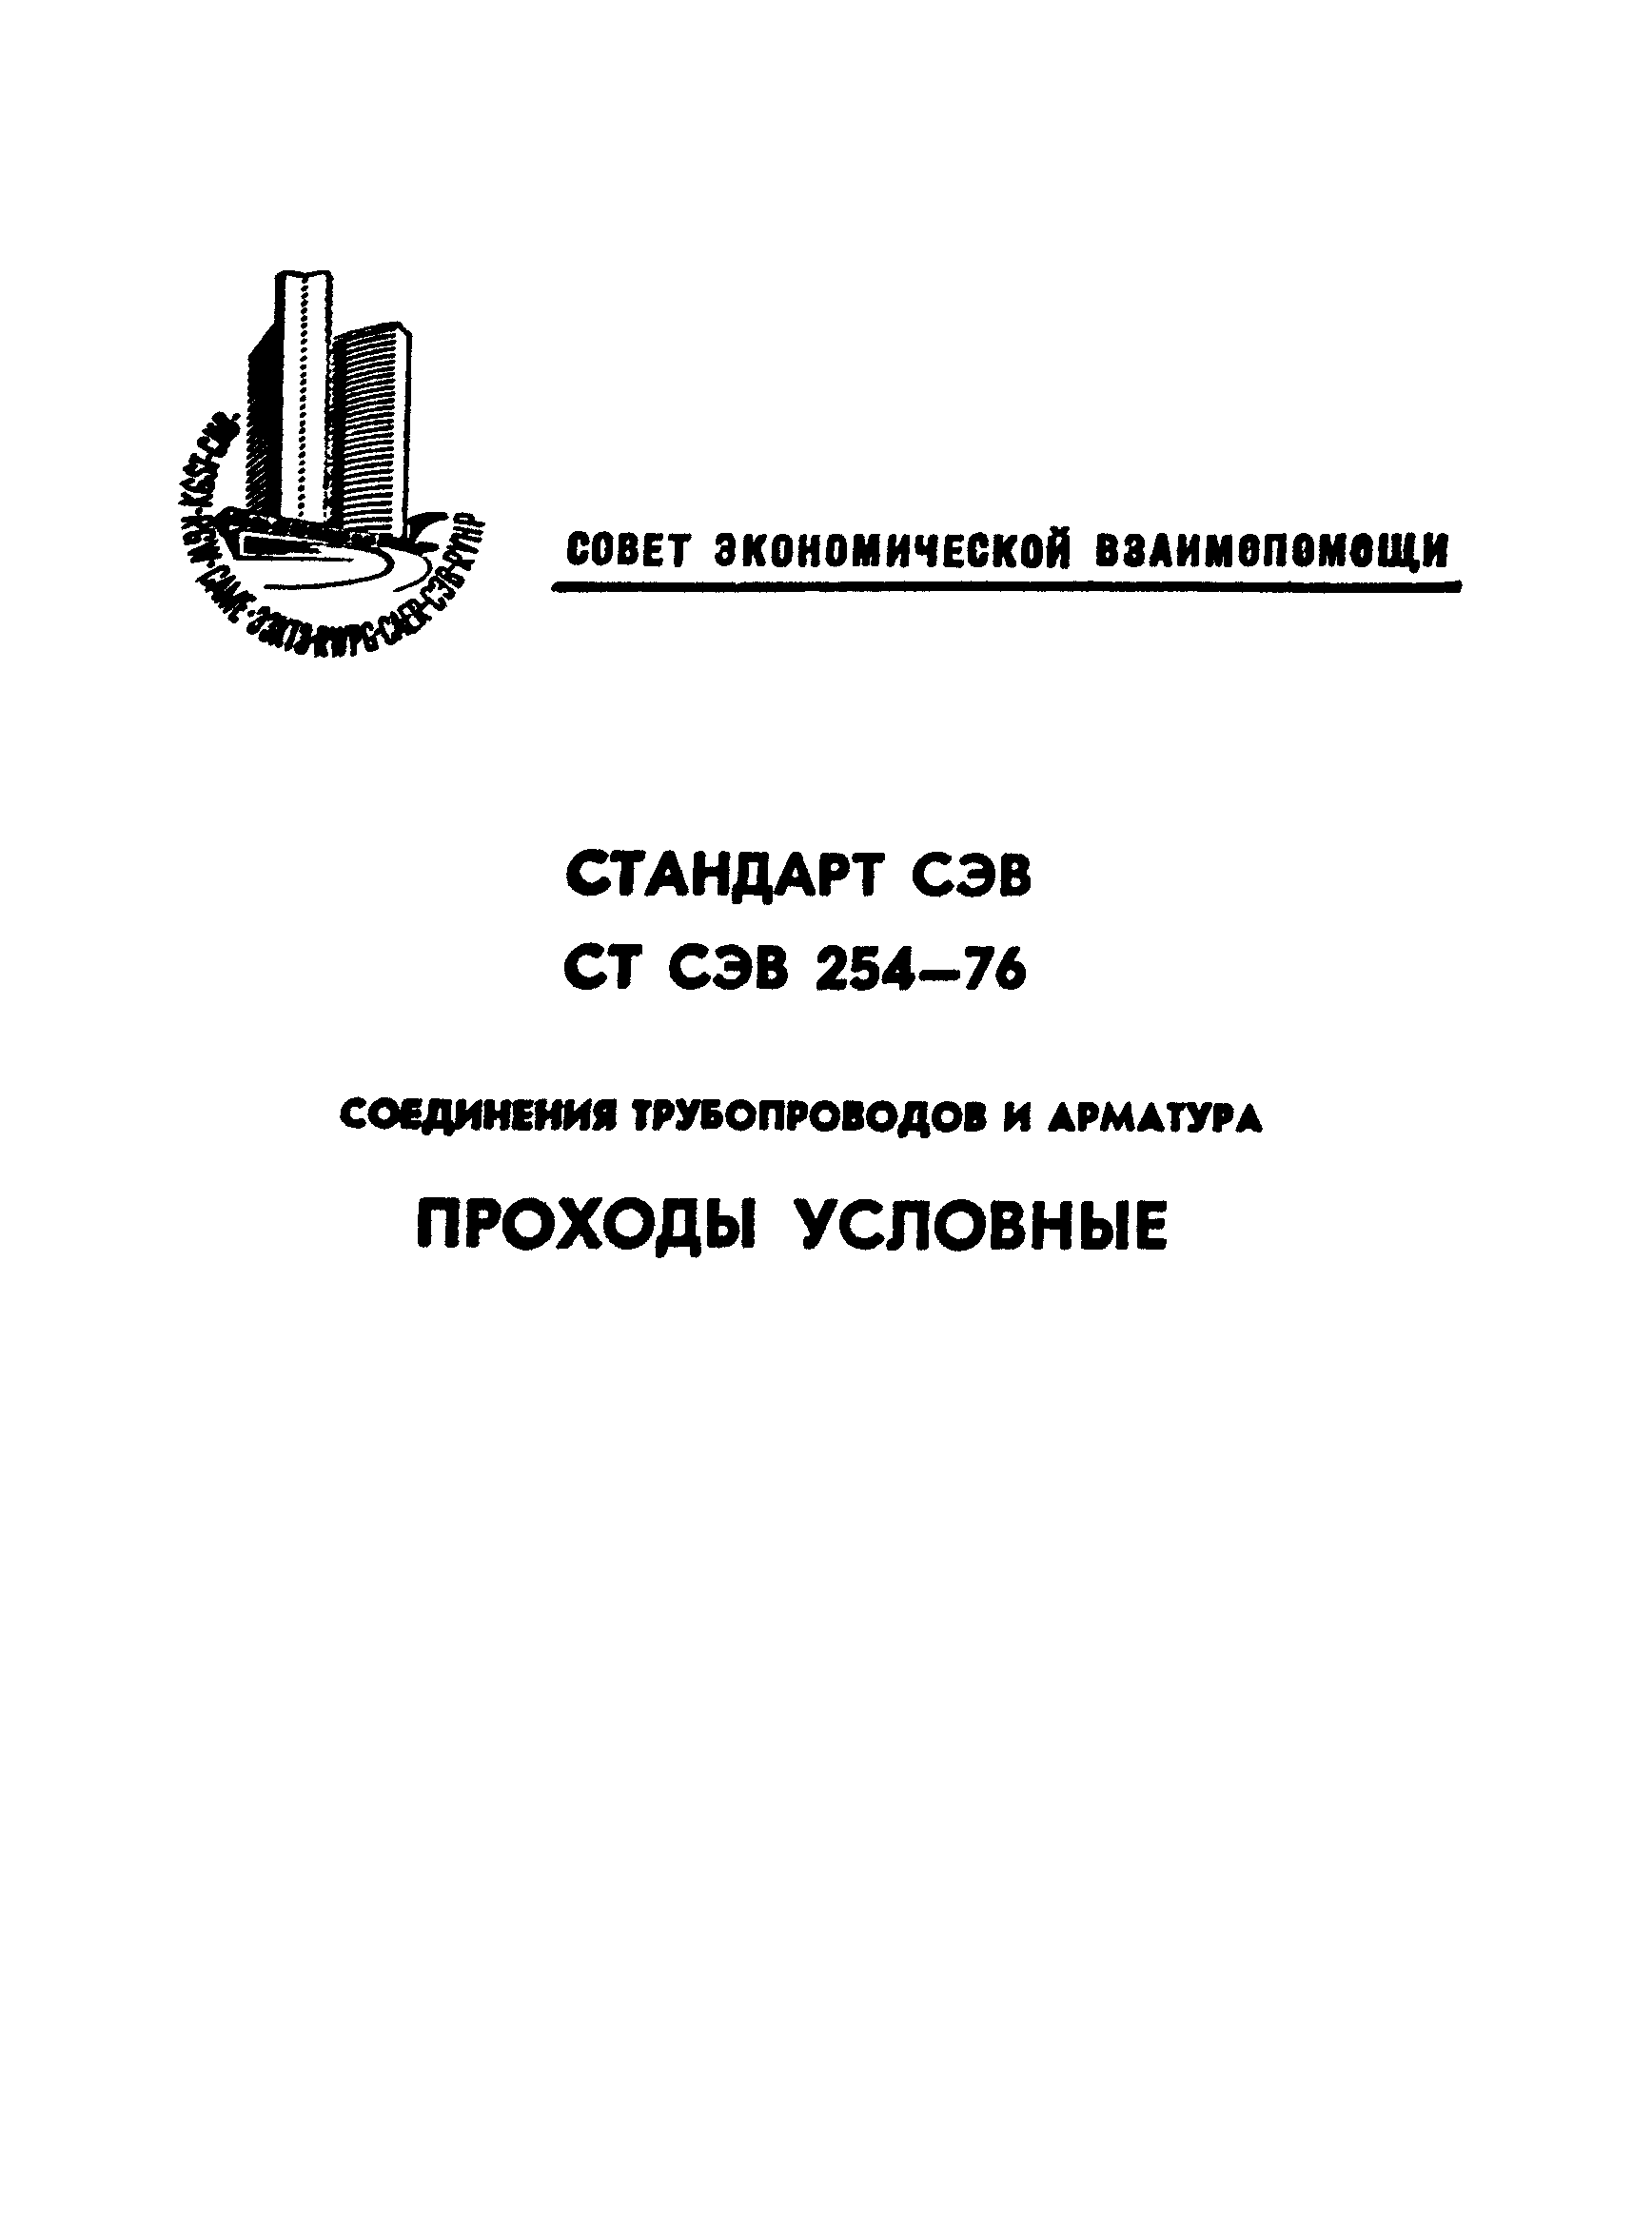 СТ СЭВ 254-76